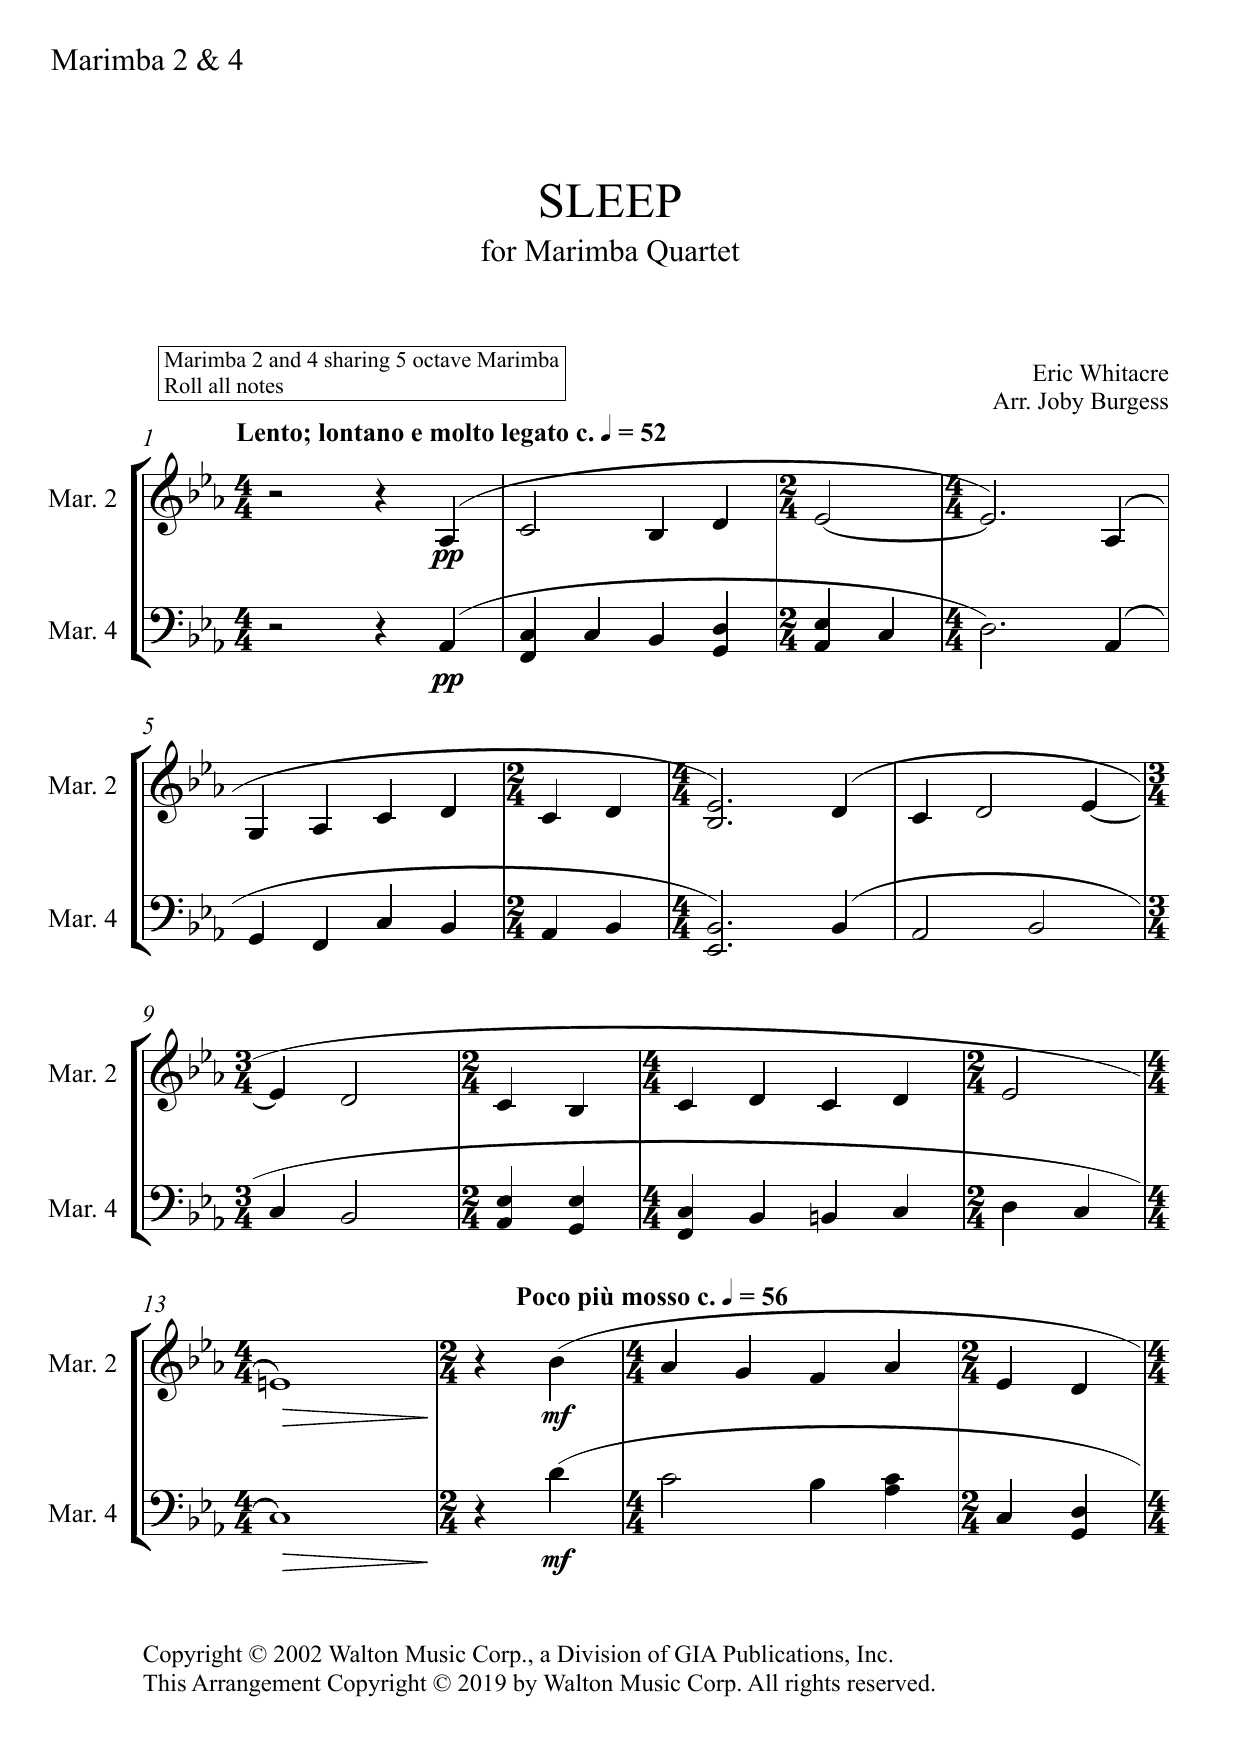 Eric Whitacre Sleep for Marimba Quartet (arr. Joby Burgess) - MARIMBA 2 & 4 sheet music notes and chords arranged for Percussion Ensemble